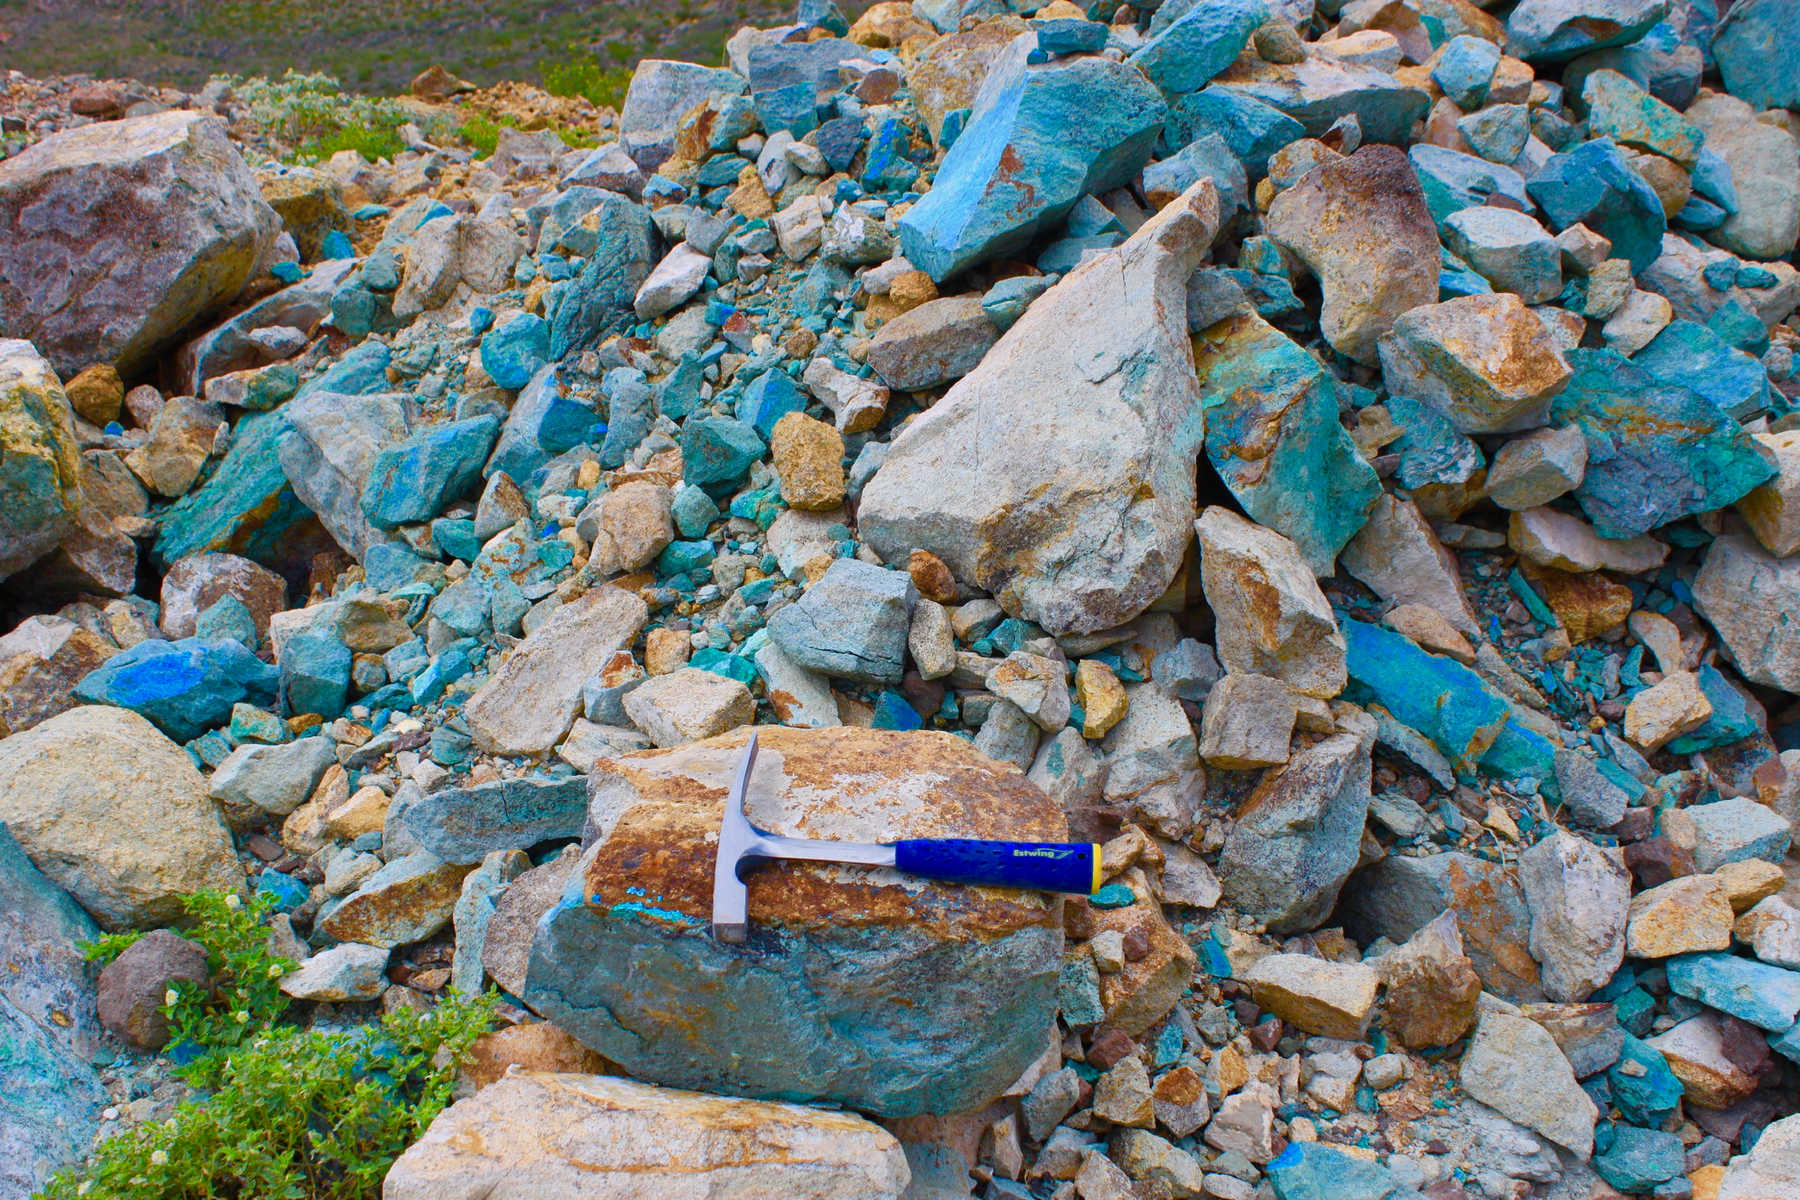 Buena Suerte Copper Silver Manto Mineralized boulders in the talus